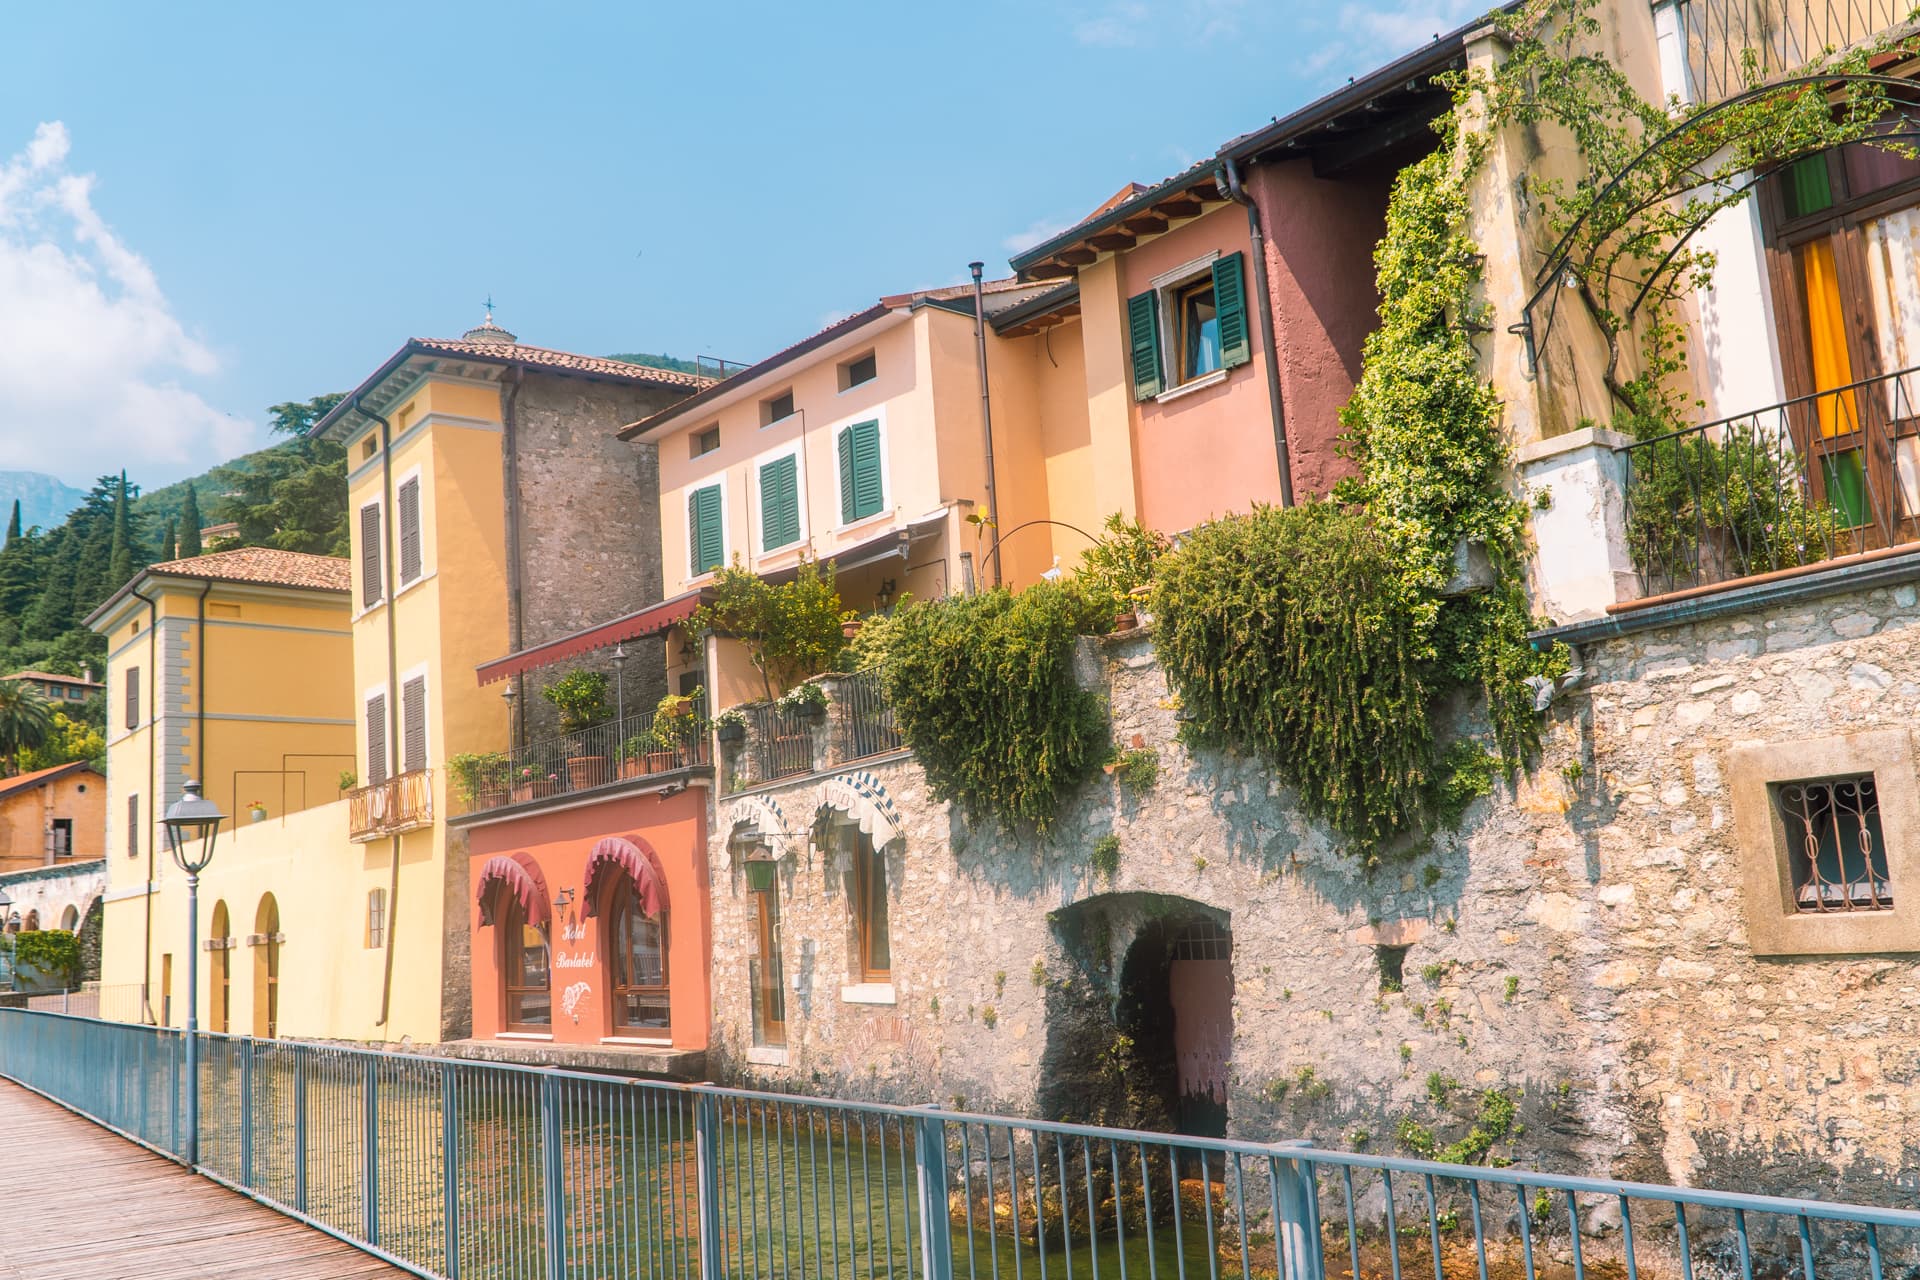 Kolorowe zabudowania Gargnano | Co zobaczyć nad Jeziorem Garda ?